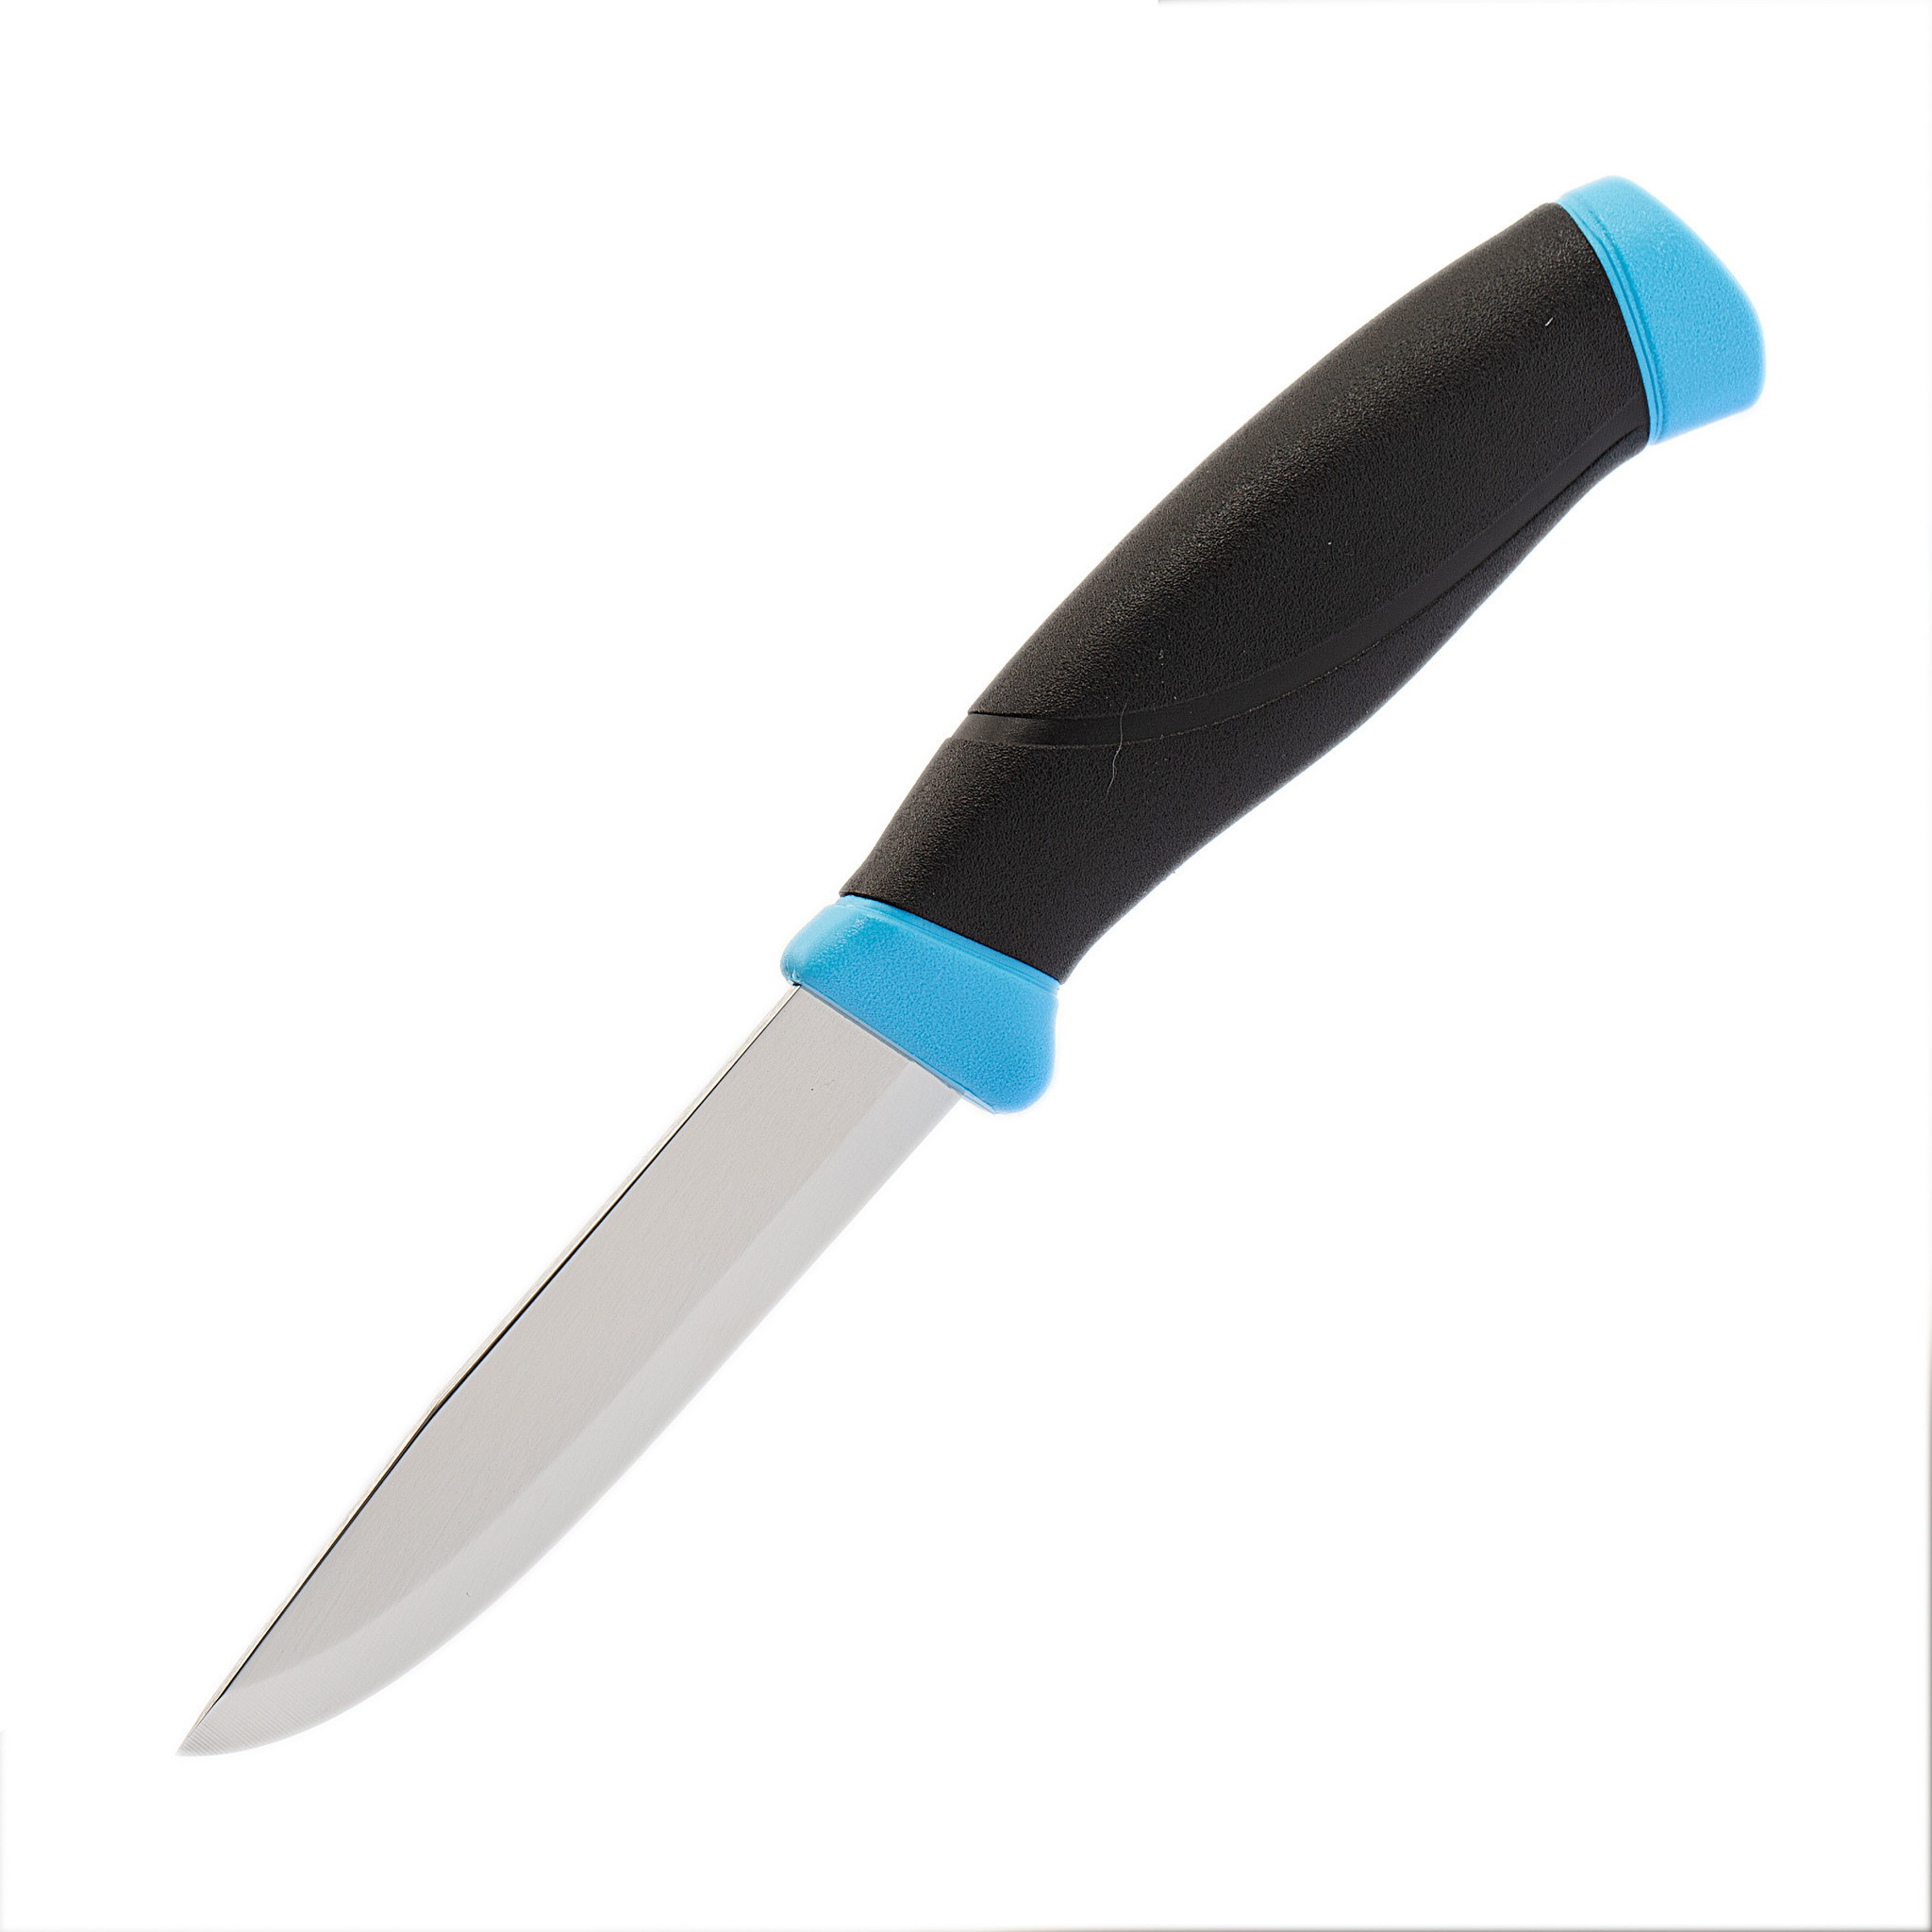 Нож с фиксированным лезвием Morakniv Companion Blue, сталь Sandvik 12С27, рукоять пластик/резина, голубой от Ножиков